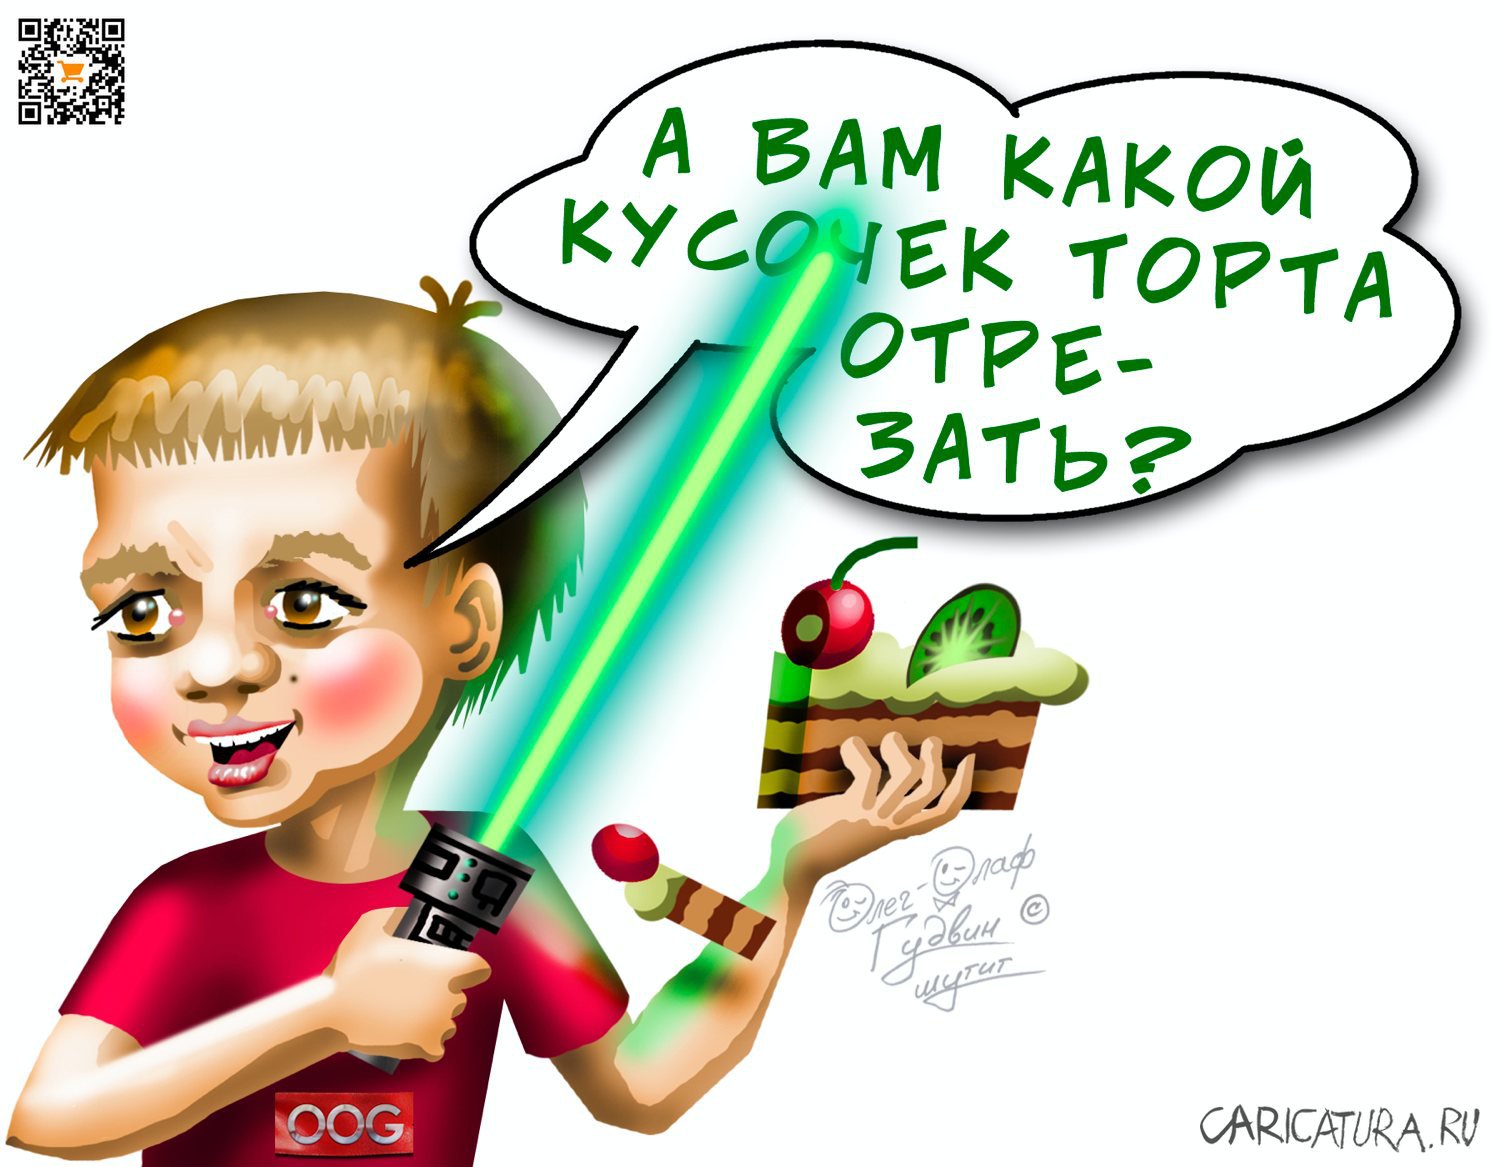 Карикатура "Кусочек торта", Олег-Олаф Гудвин